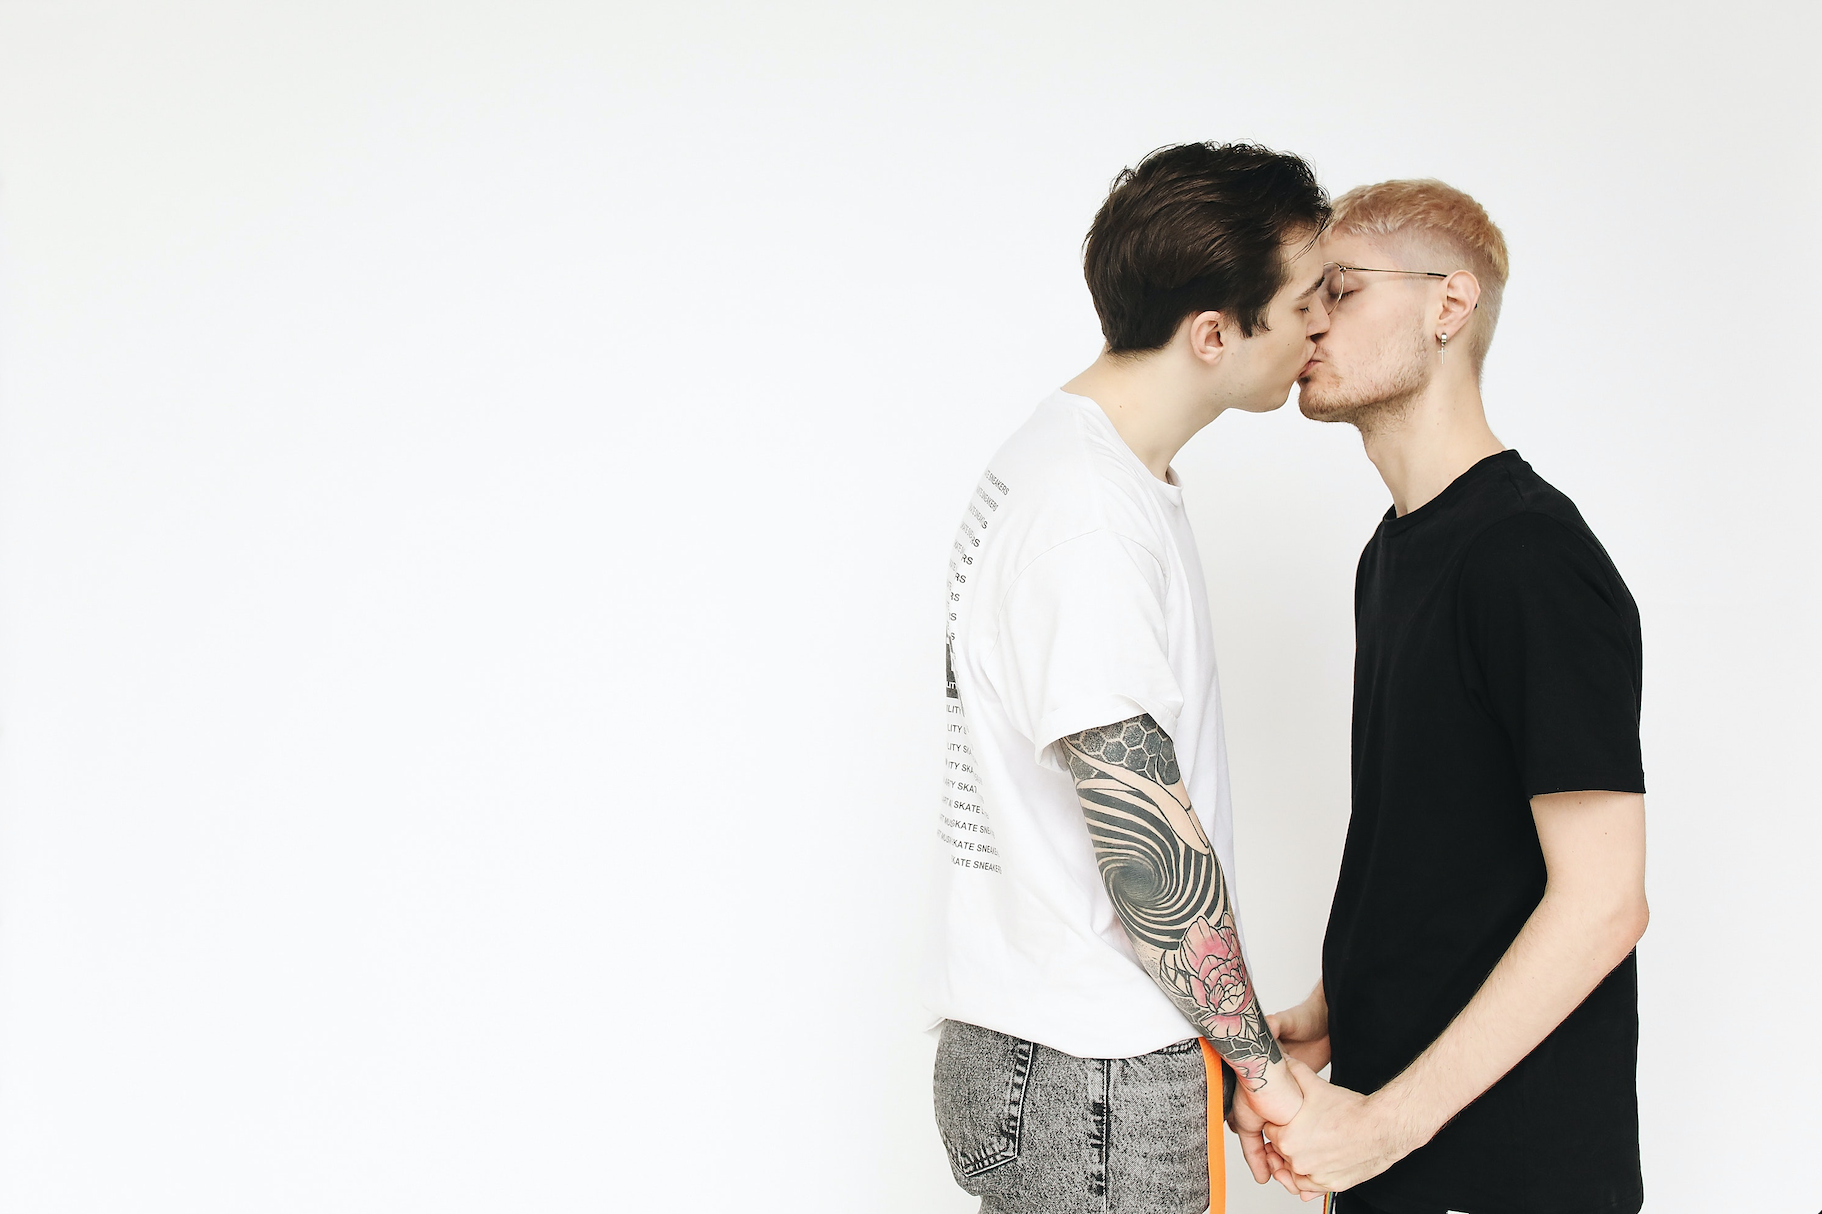 Homo, hetero... a jiné sexuality